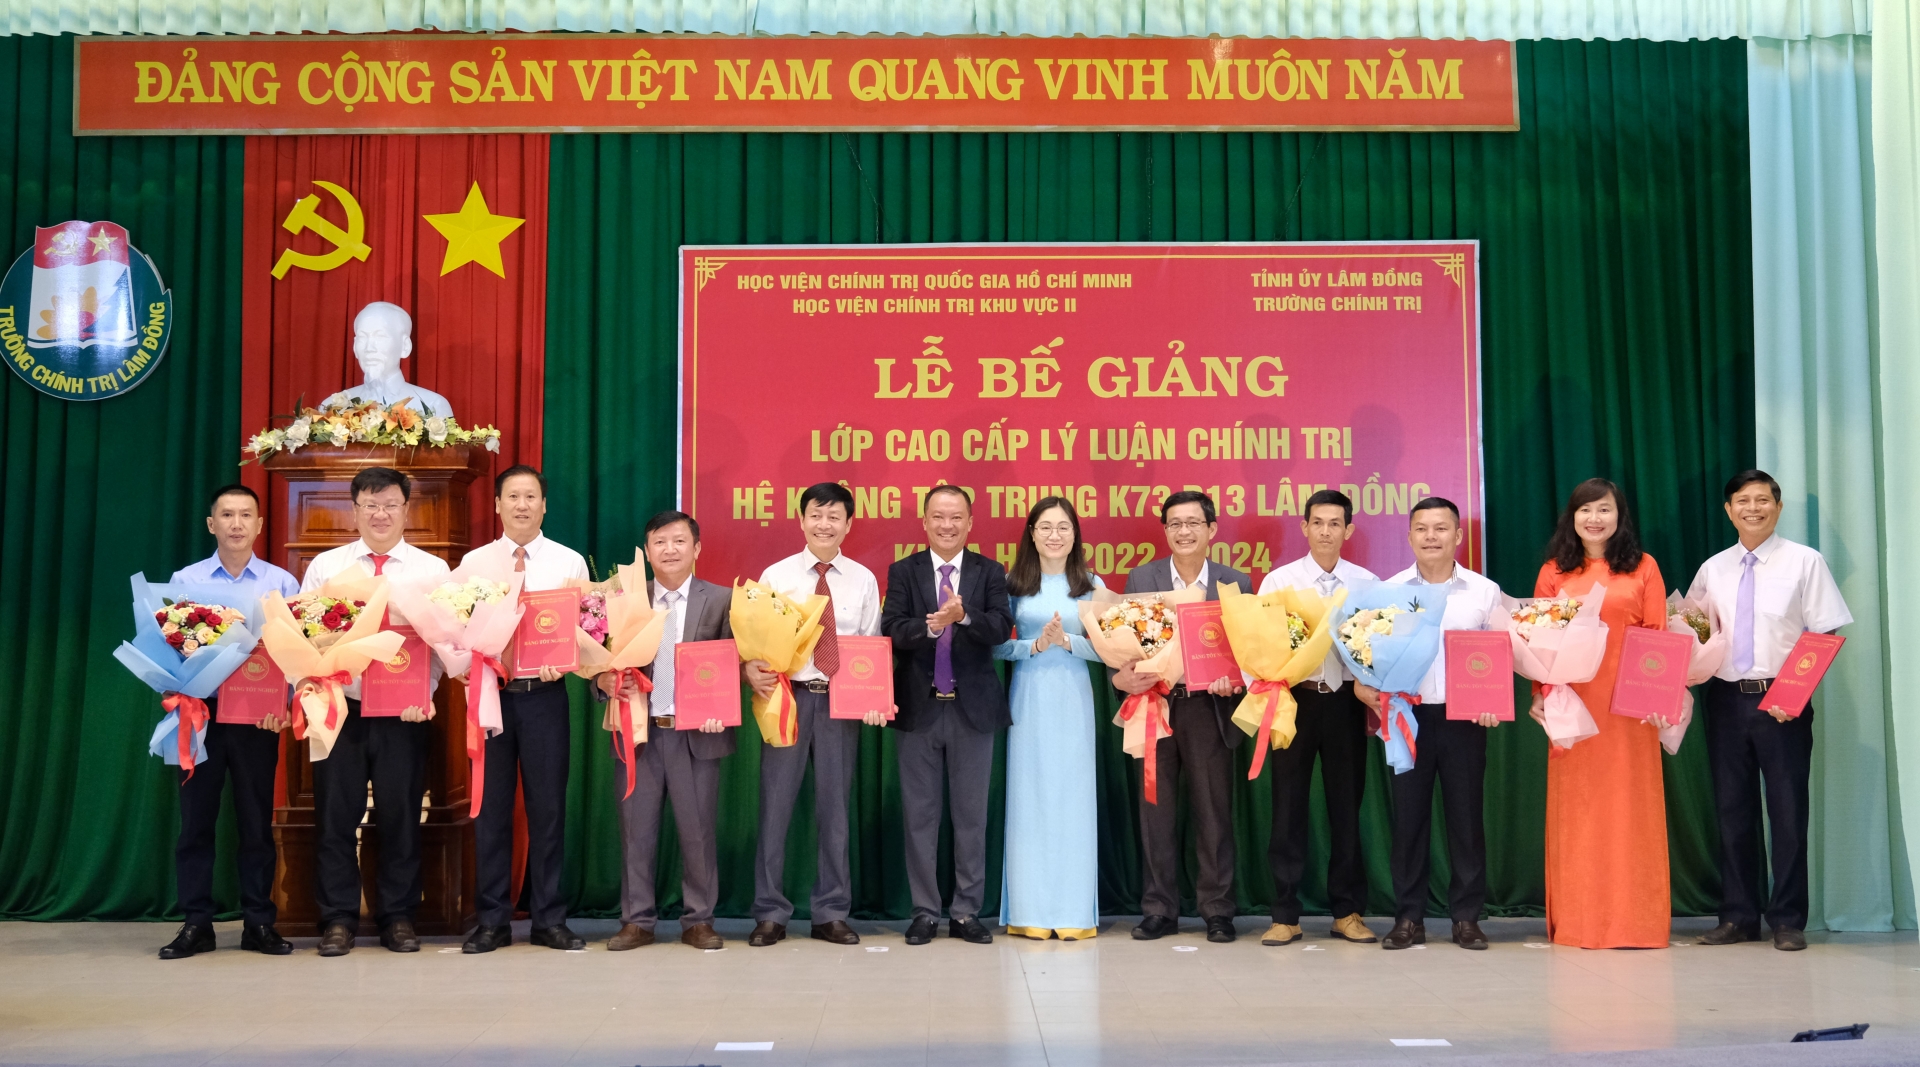 Vũ Quang Lâm – Phó Trưởng Ban Tổ chức Tỉnh ủy và Phó Giáo sư, Tiến sĩ  Nguyễn Thị Tuyết Mai - Phó Giám đốc Học viện Chính trị Khu vực II trao bằng tốt nghiệp cho các học viên